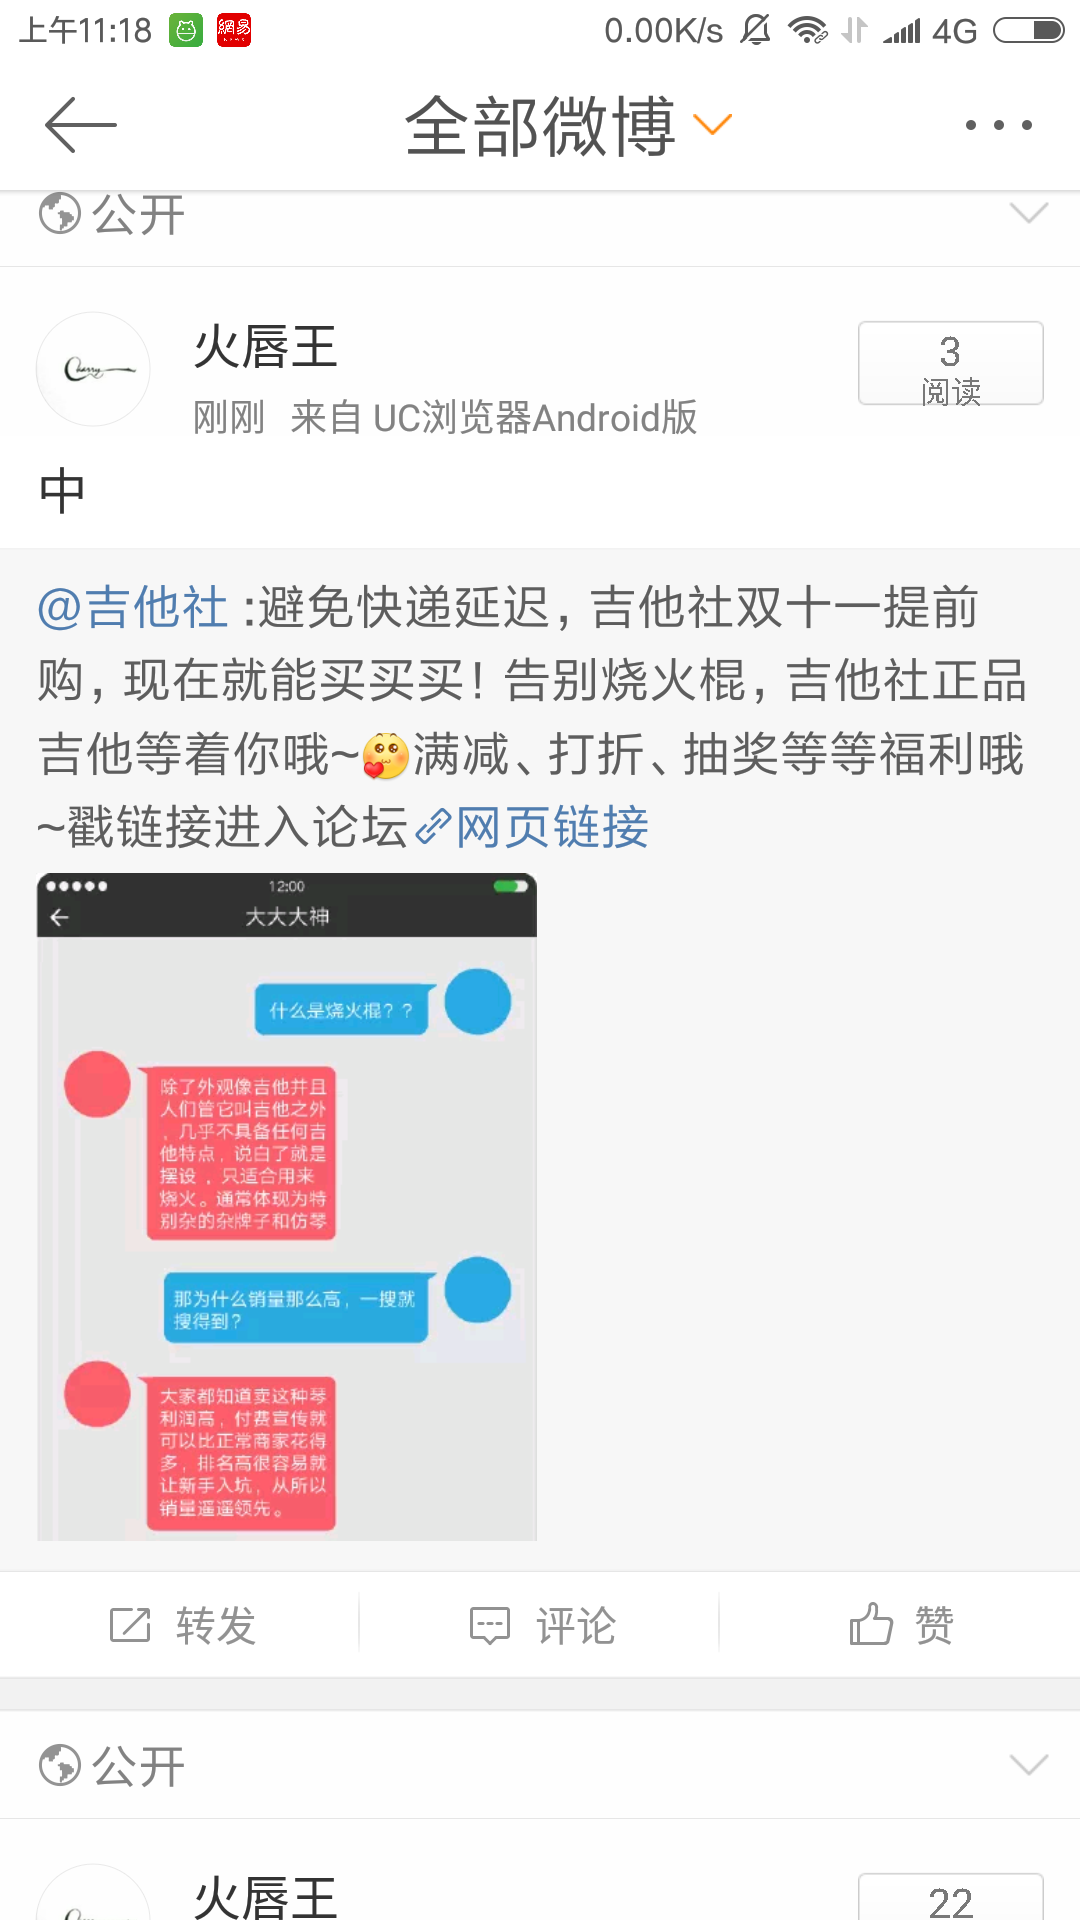 Screenshot_2016-11-09-11-18-22-642_com.sina.weibo.png